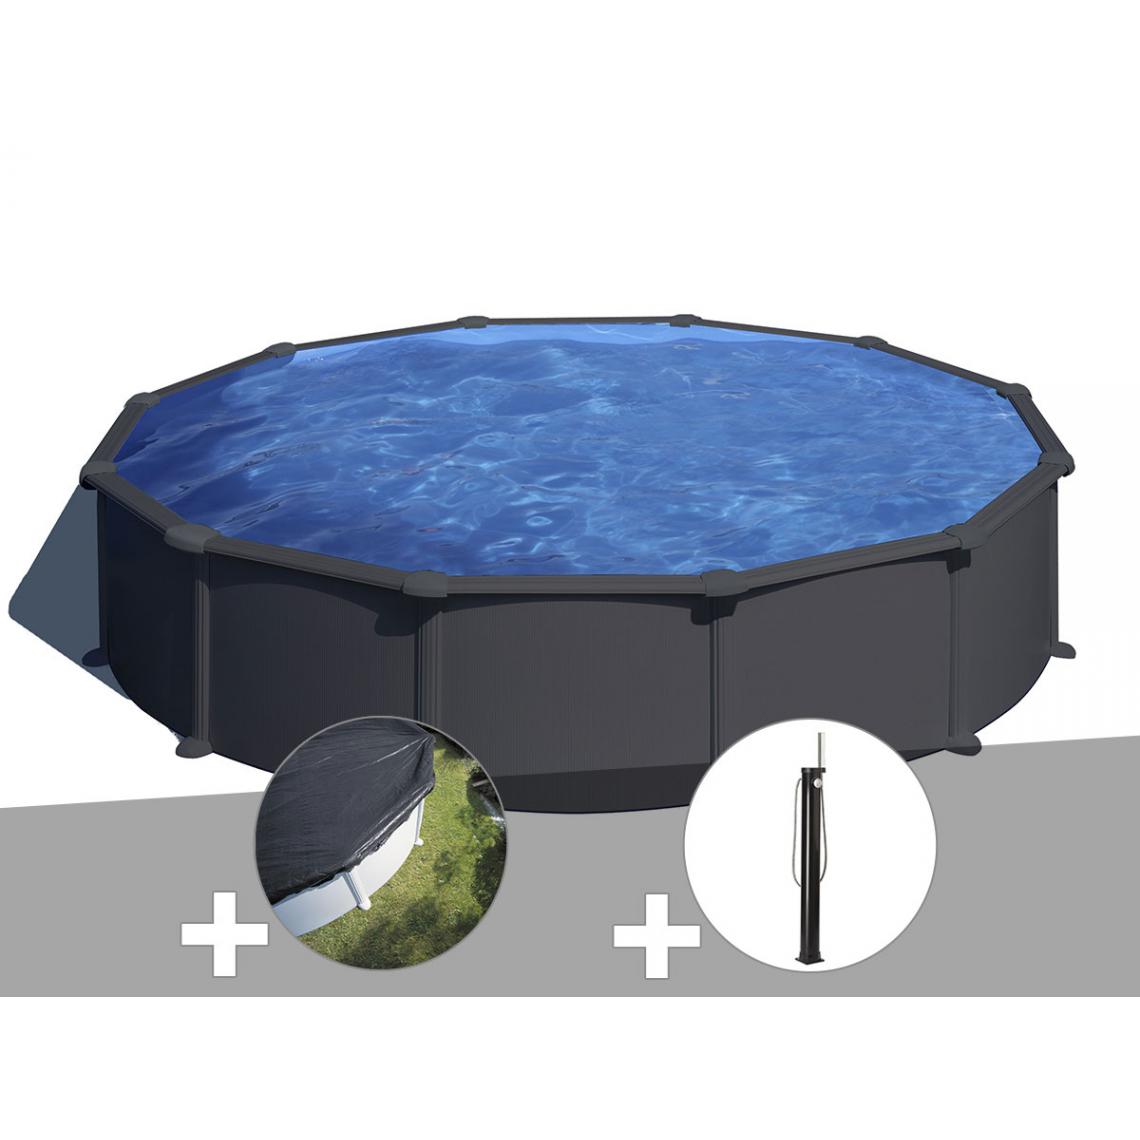 Gre - Kit piscine acier gris anthracite Gré Juni ronde 5,70 x 1,32 m + Bâche d'hivernage + Douche - Piscines acier et résine